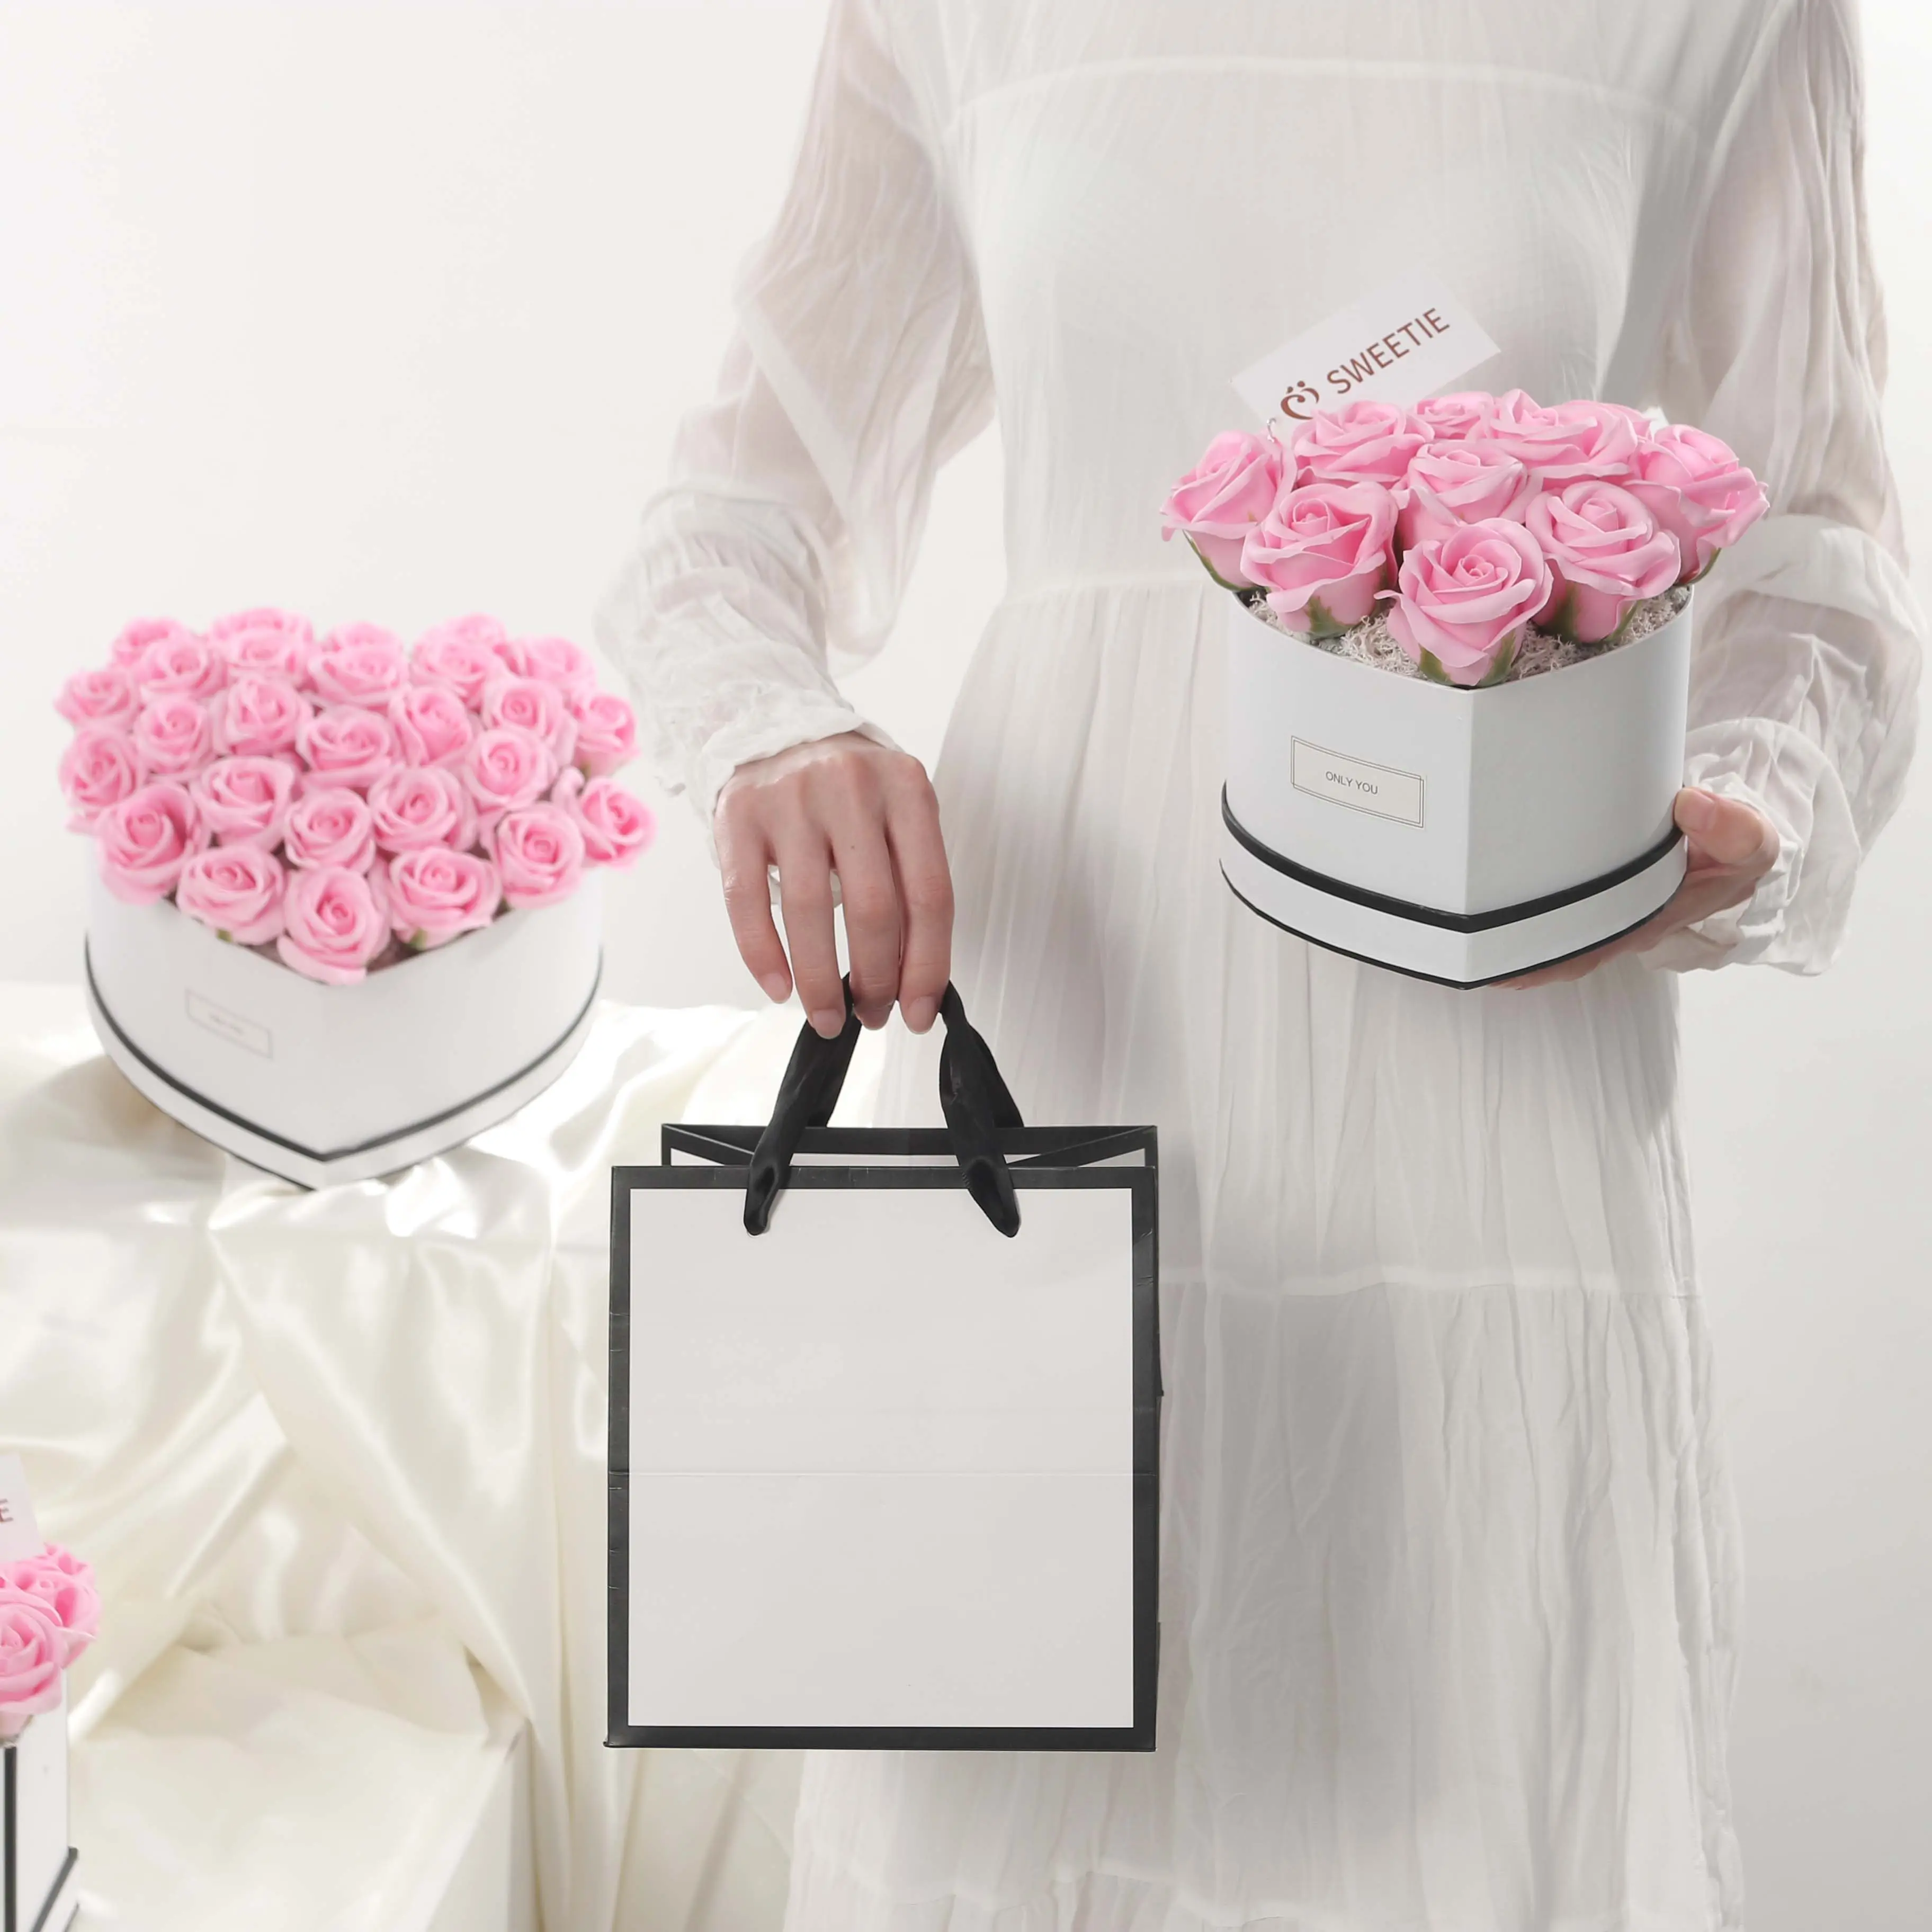 Nuevo estilo de fábrica al por mayor Artificial Floral perfumado Rosas flor corazón caja de regalo con decoración más barato larga vida jabón rosas